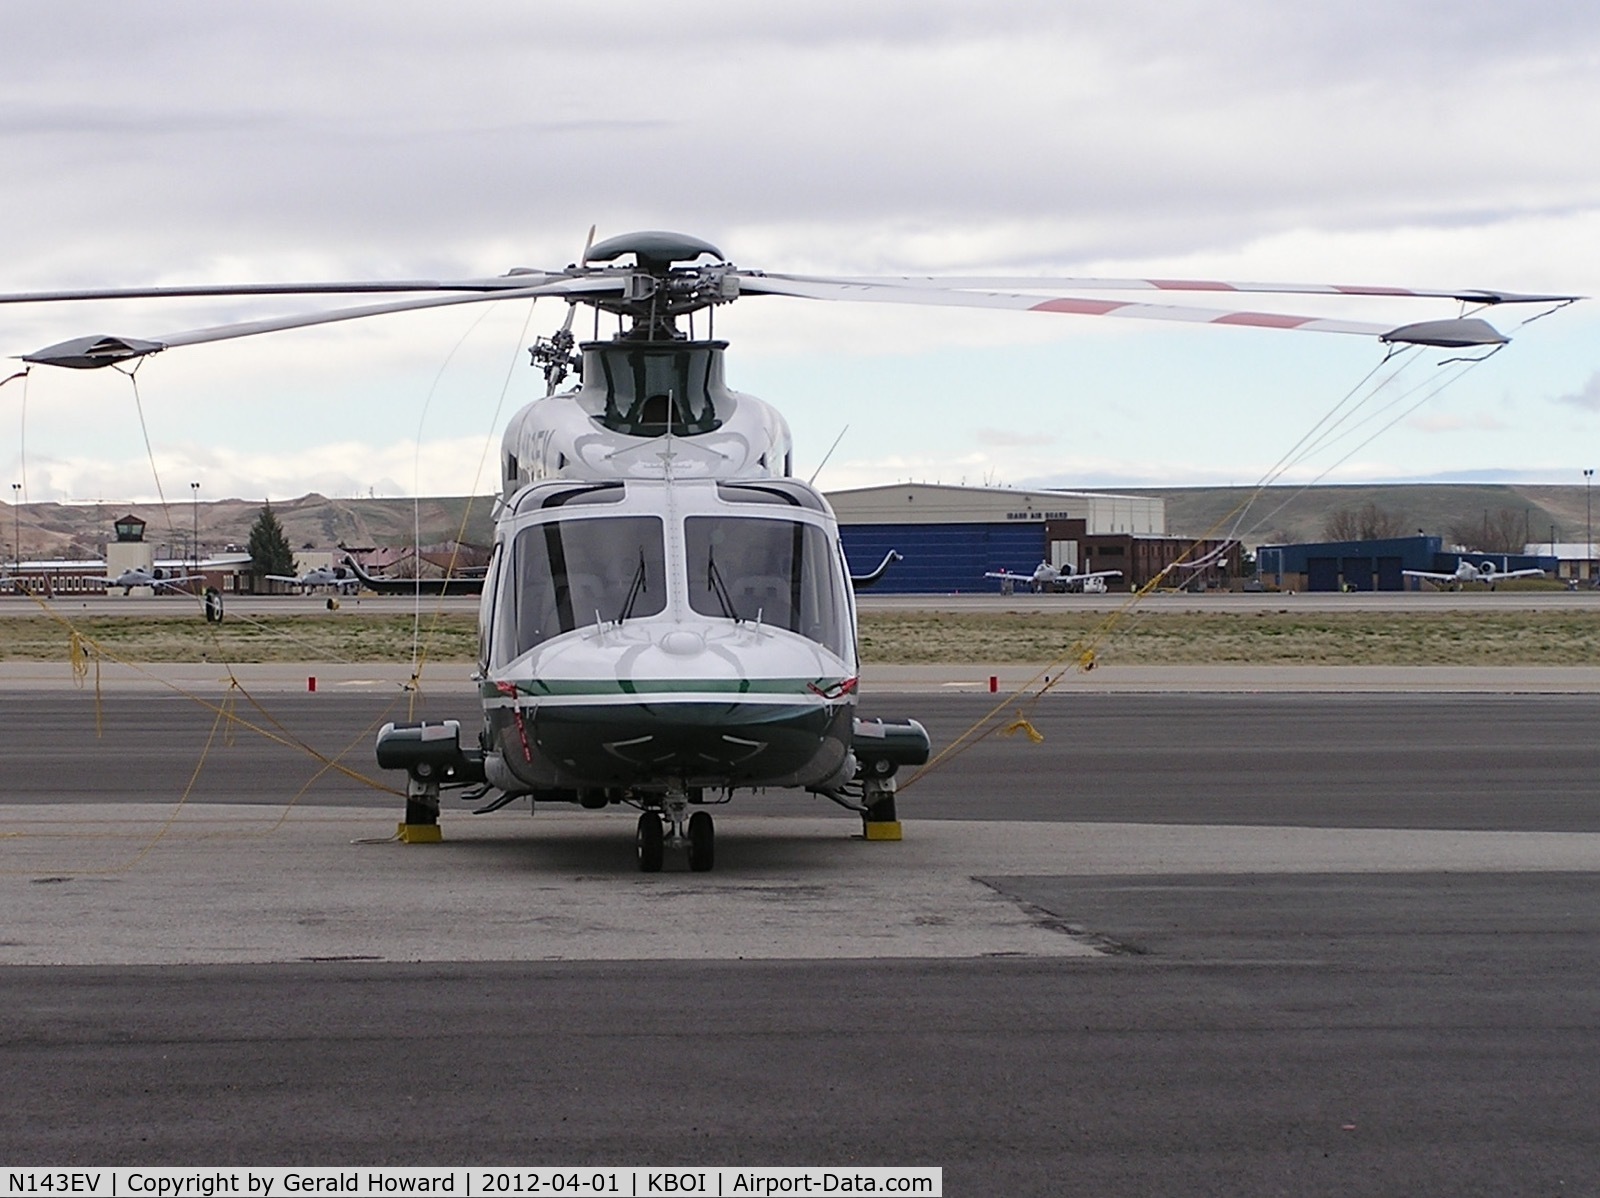 N143EV, AgustaWestland AW-139 C/N 41273, Parked on the north GA ramp.